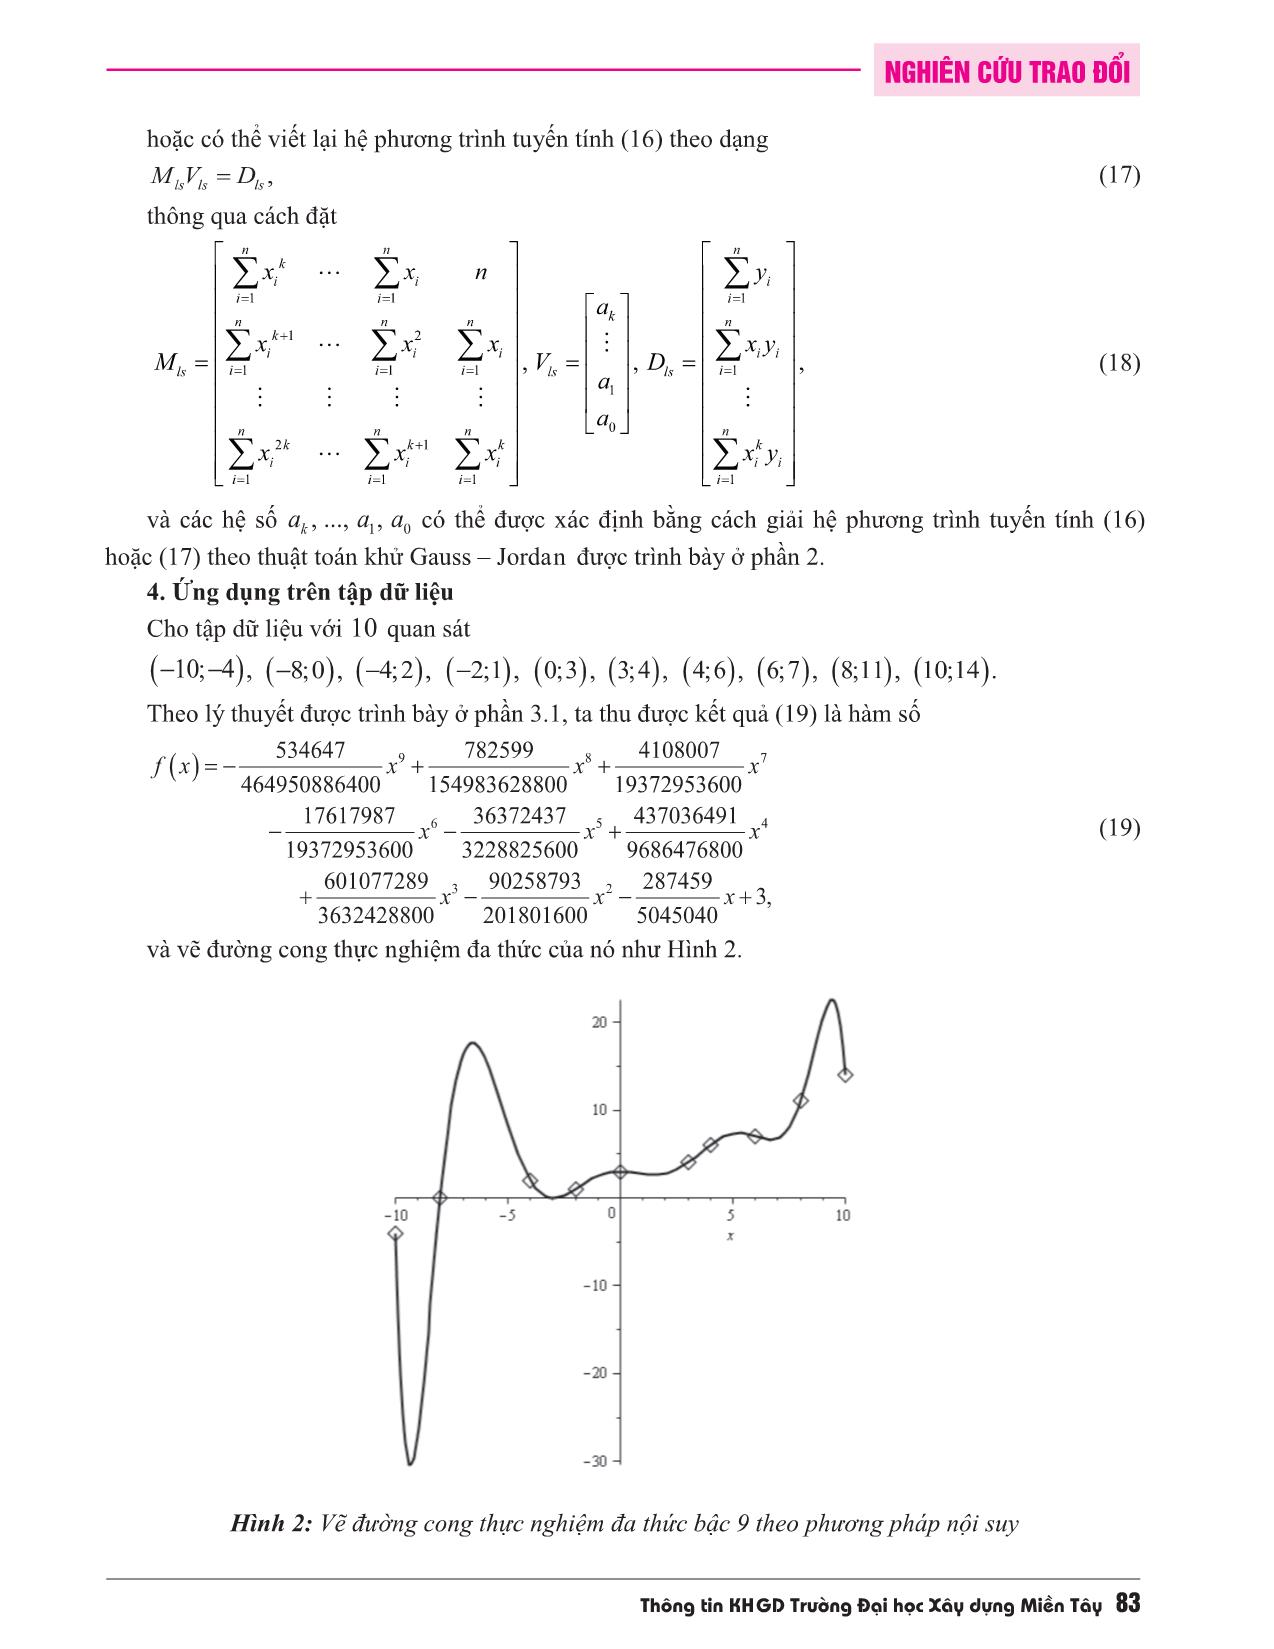 Khử Gauss-Jordan với vẽ đường cong thực nghiệm đa thức trang 6